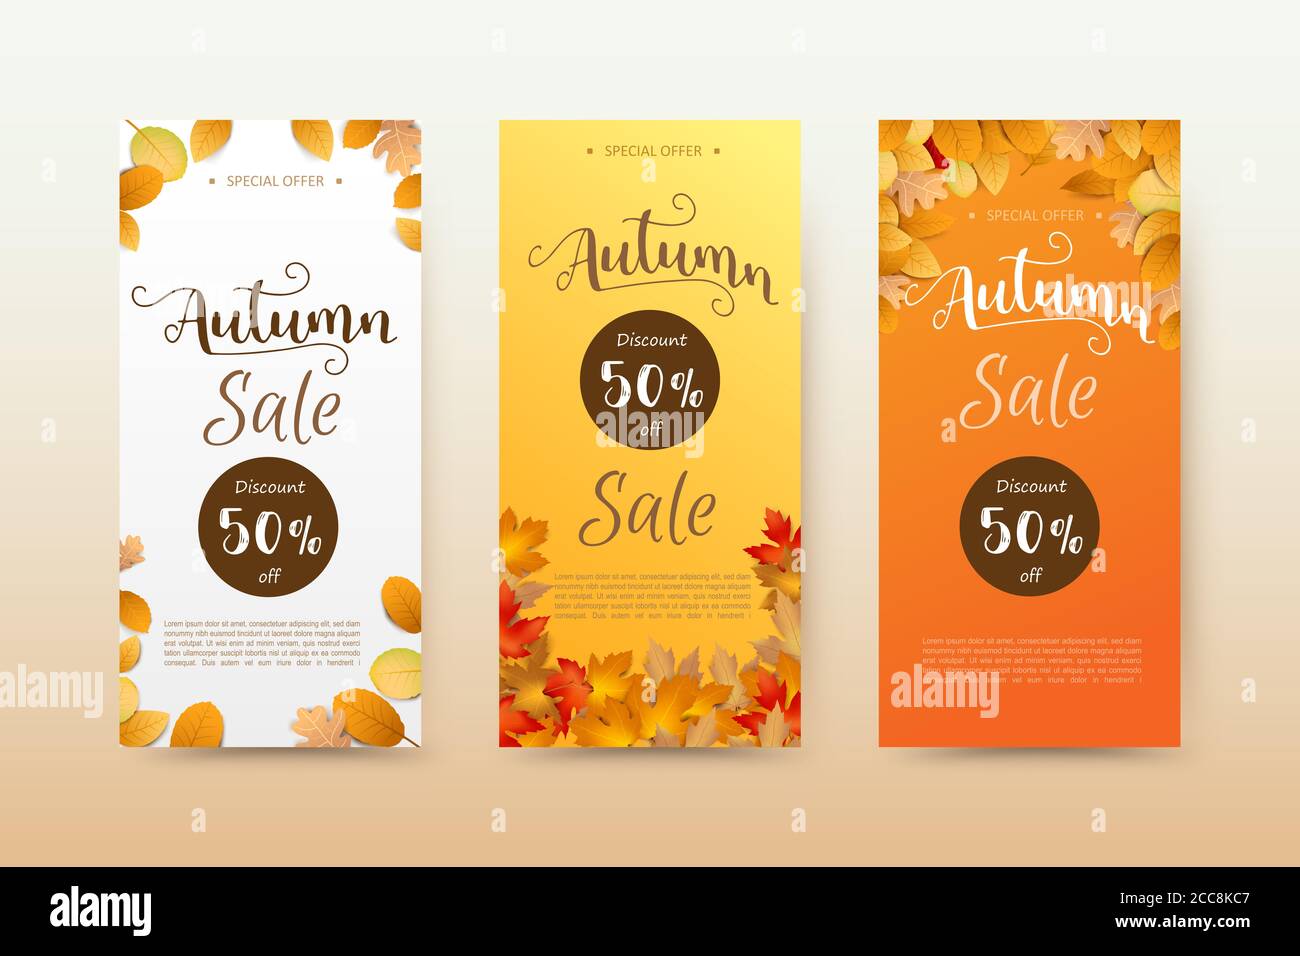 Herbst Sale Tag Banner und Herbst trocken Blatt fallen auf einem weißen Hintergrund, trocken von Ahornblatt, für Herbst Design-Element, Vektor-Illustration Stockfoto